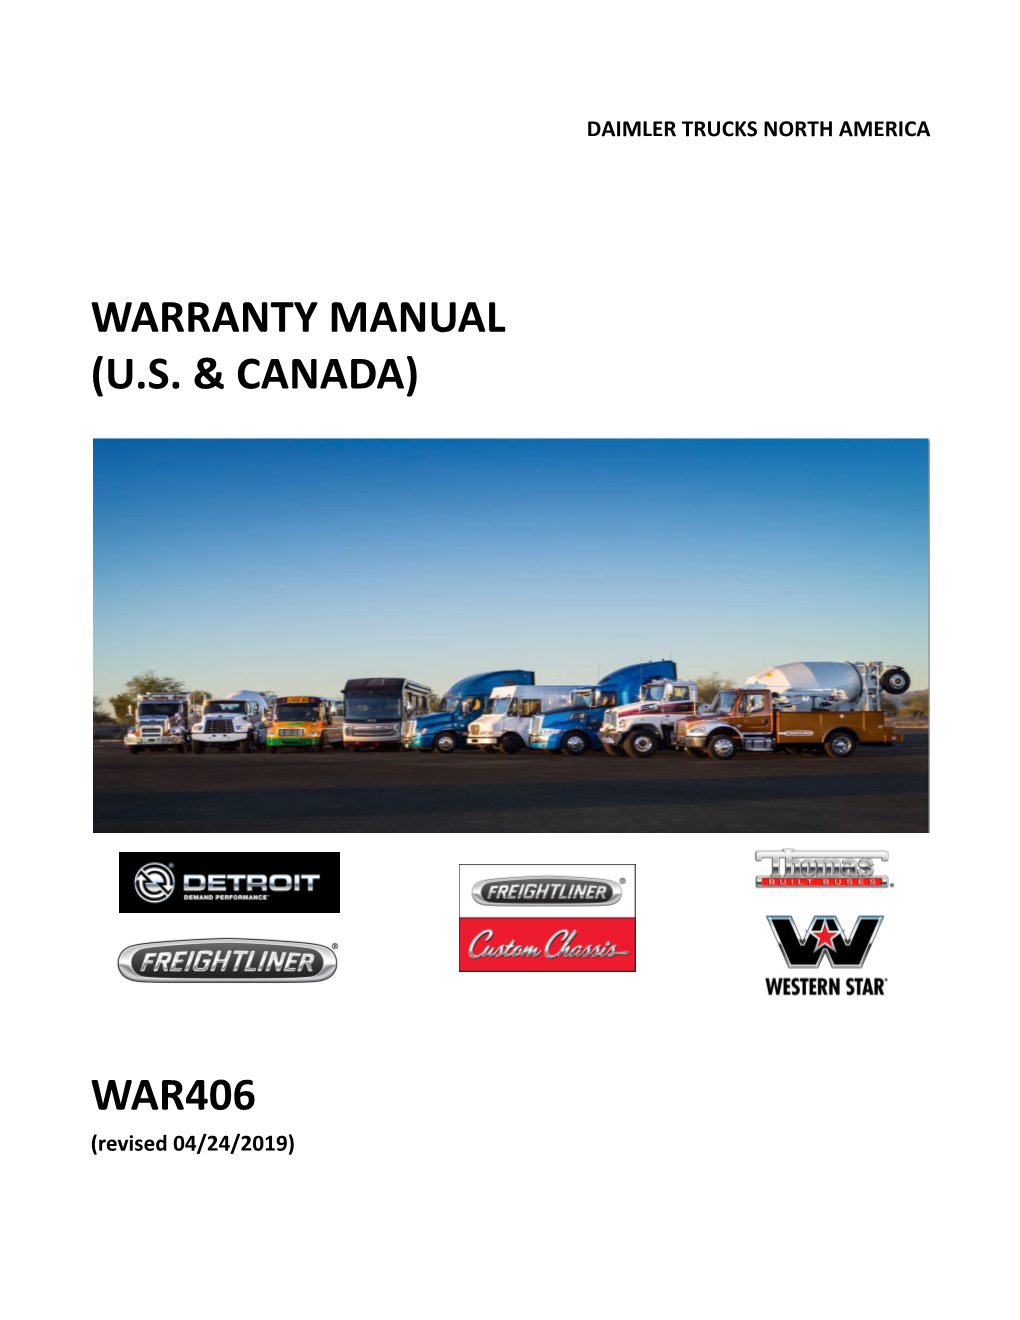 Warranty Manual (U.S